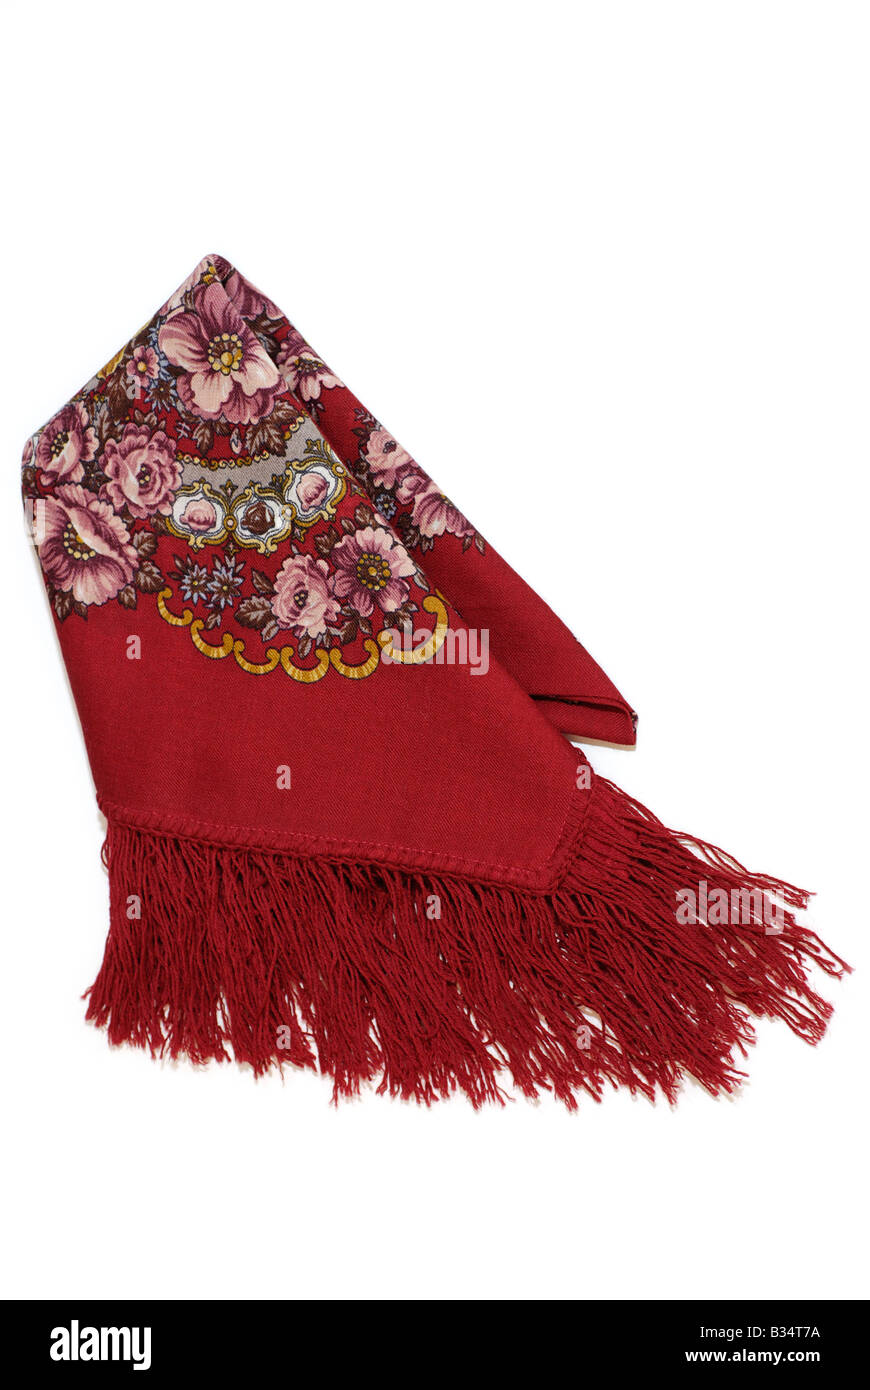 Foulard rouge avec motif floral Banque D'Images